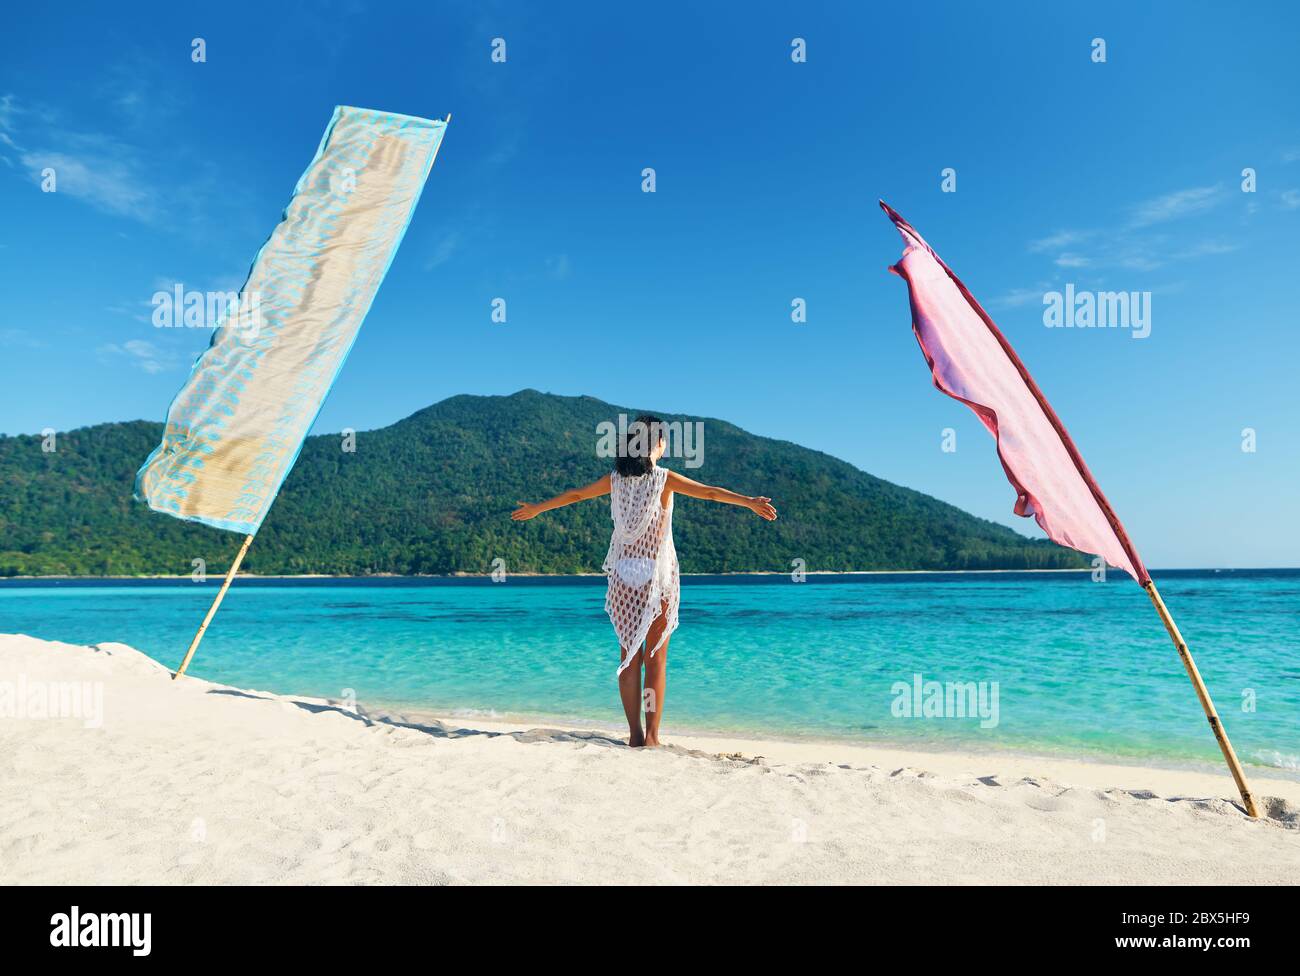 Junge Frau mit Händen nach oben entspannen und genießen türkisfarbenes Meer am tropischen Strand in Paradise Island. Reise, Urlaub, Rest Konzept Stockfoto